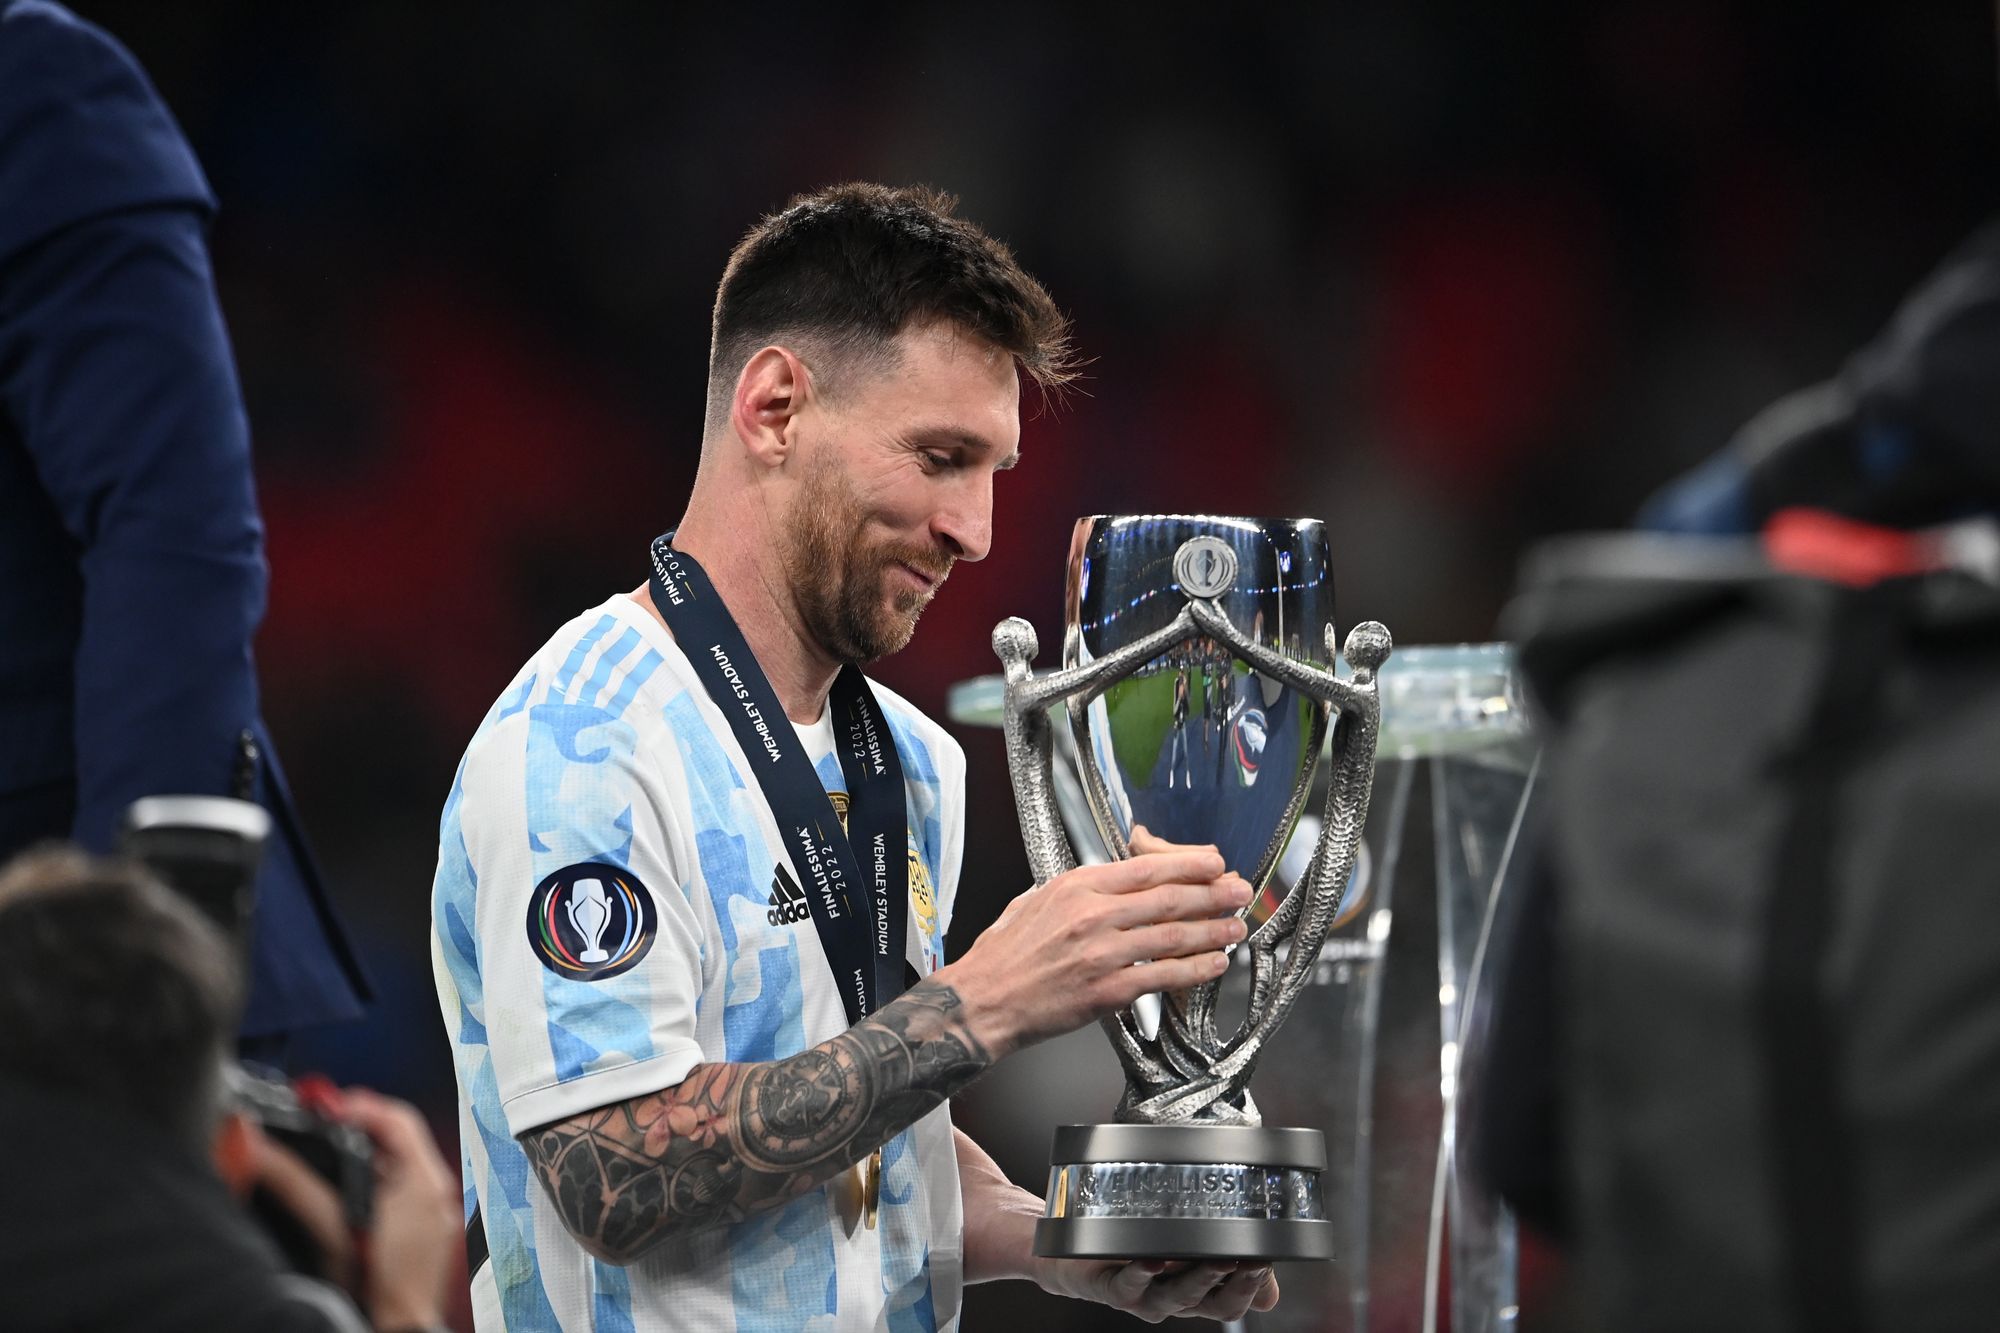 Argentína már másodszor múlta felül az Európa-bajnokot a két kontinens futballtornájának döntőjében, Messi ismét trófeát nyert /Fotó: EPA/Andy Ryan